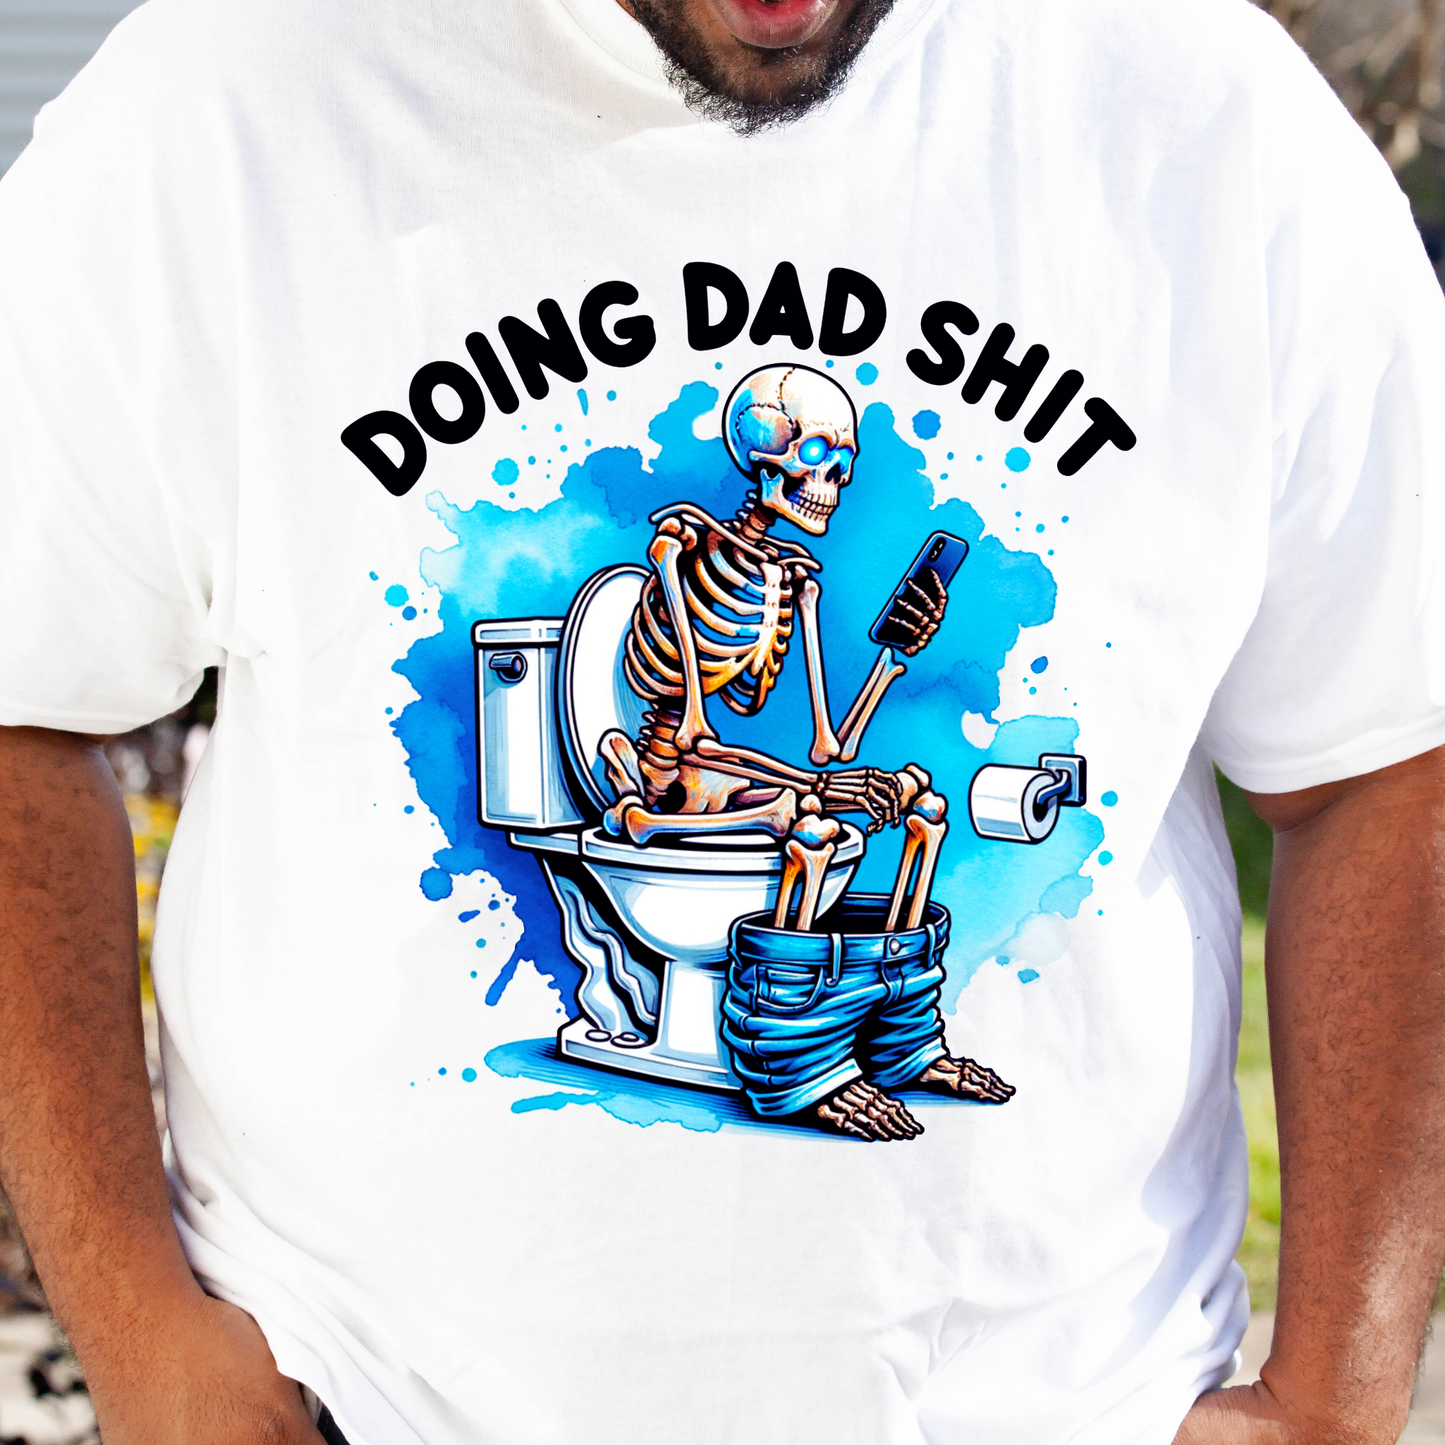 Doing Dad ish Unisex Tshirt